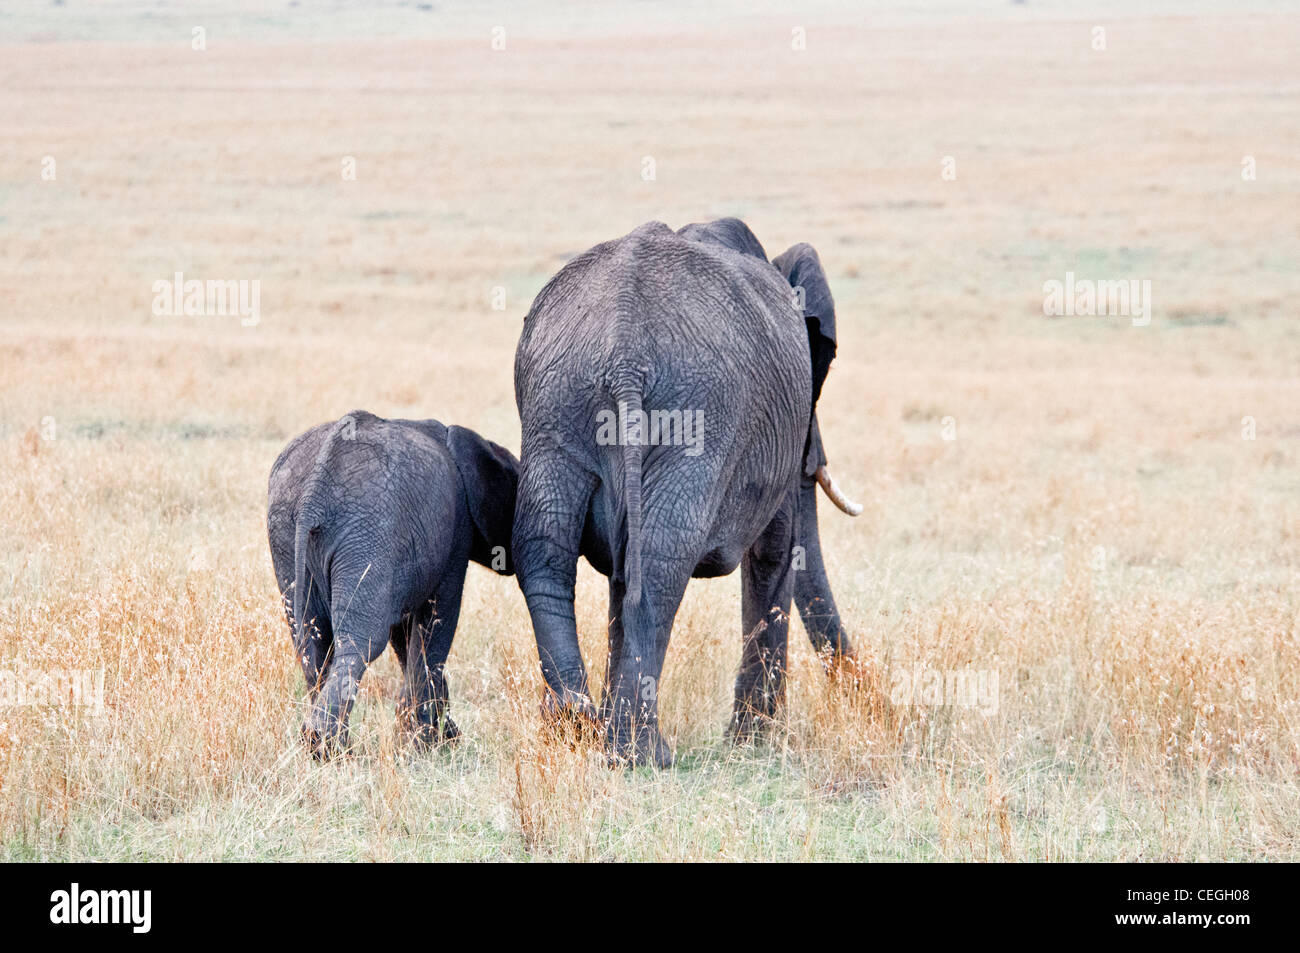 Baby-afrikanische Elefanten folgende seiner Mutter, Loxodonta Africana, Masai Mara National Reserve, Kenia, Afrika Stockfoto